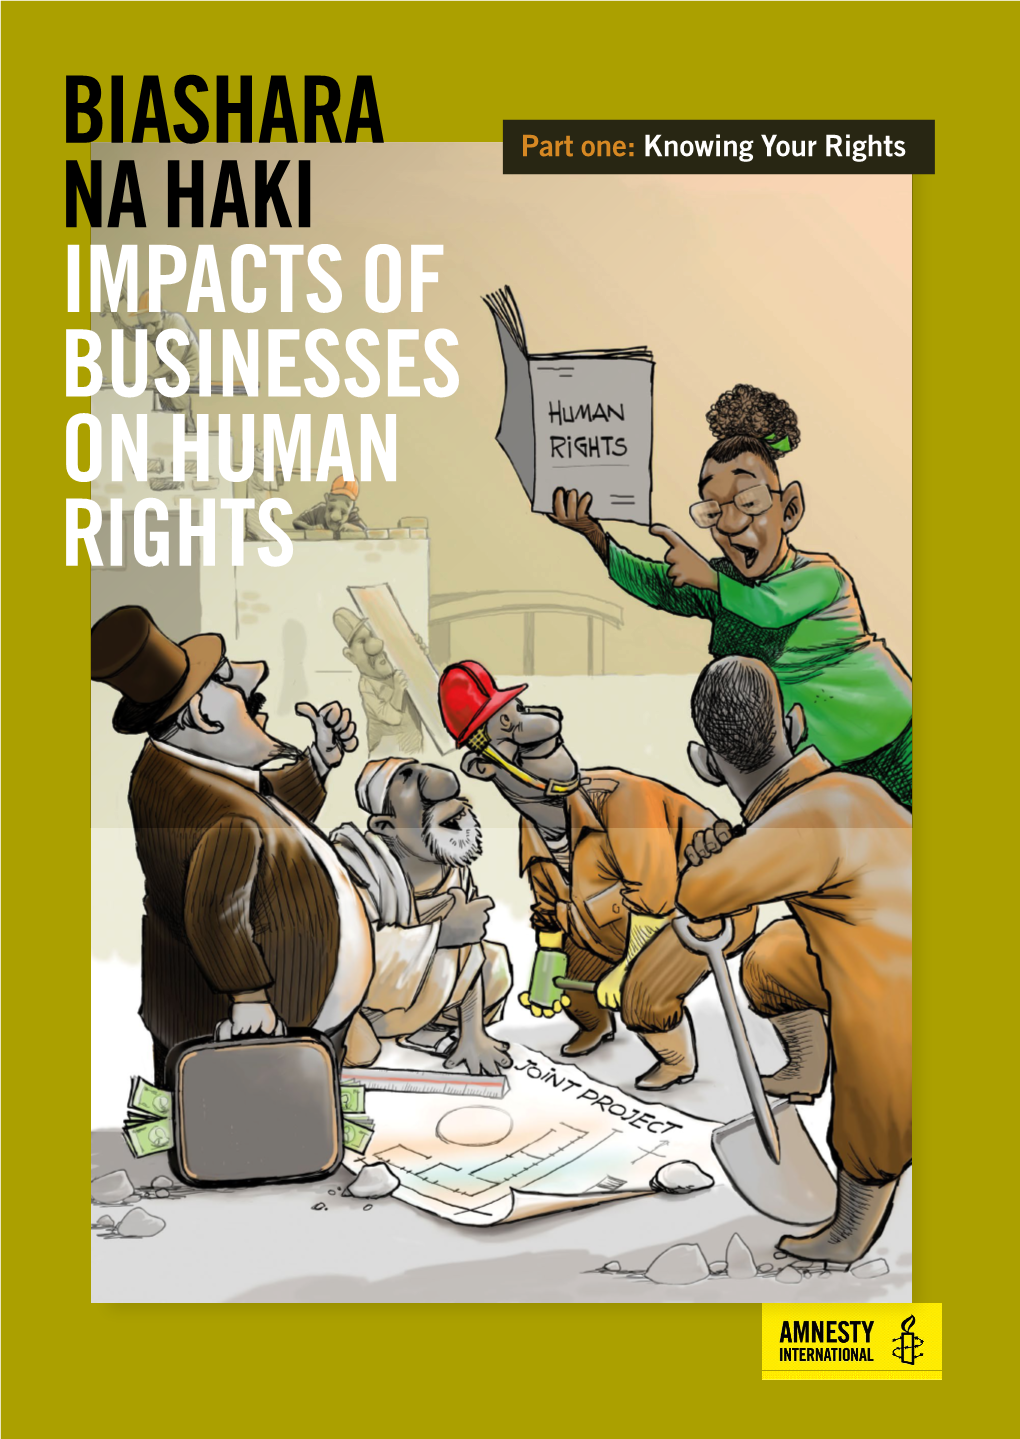 Biashara Na Haki Impacts of Businesses on Human Rights